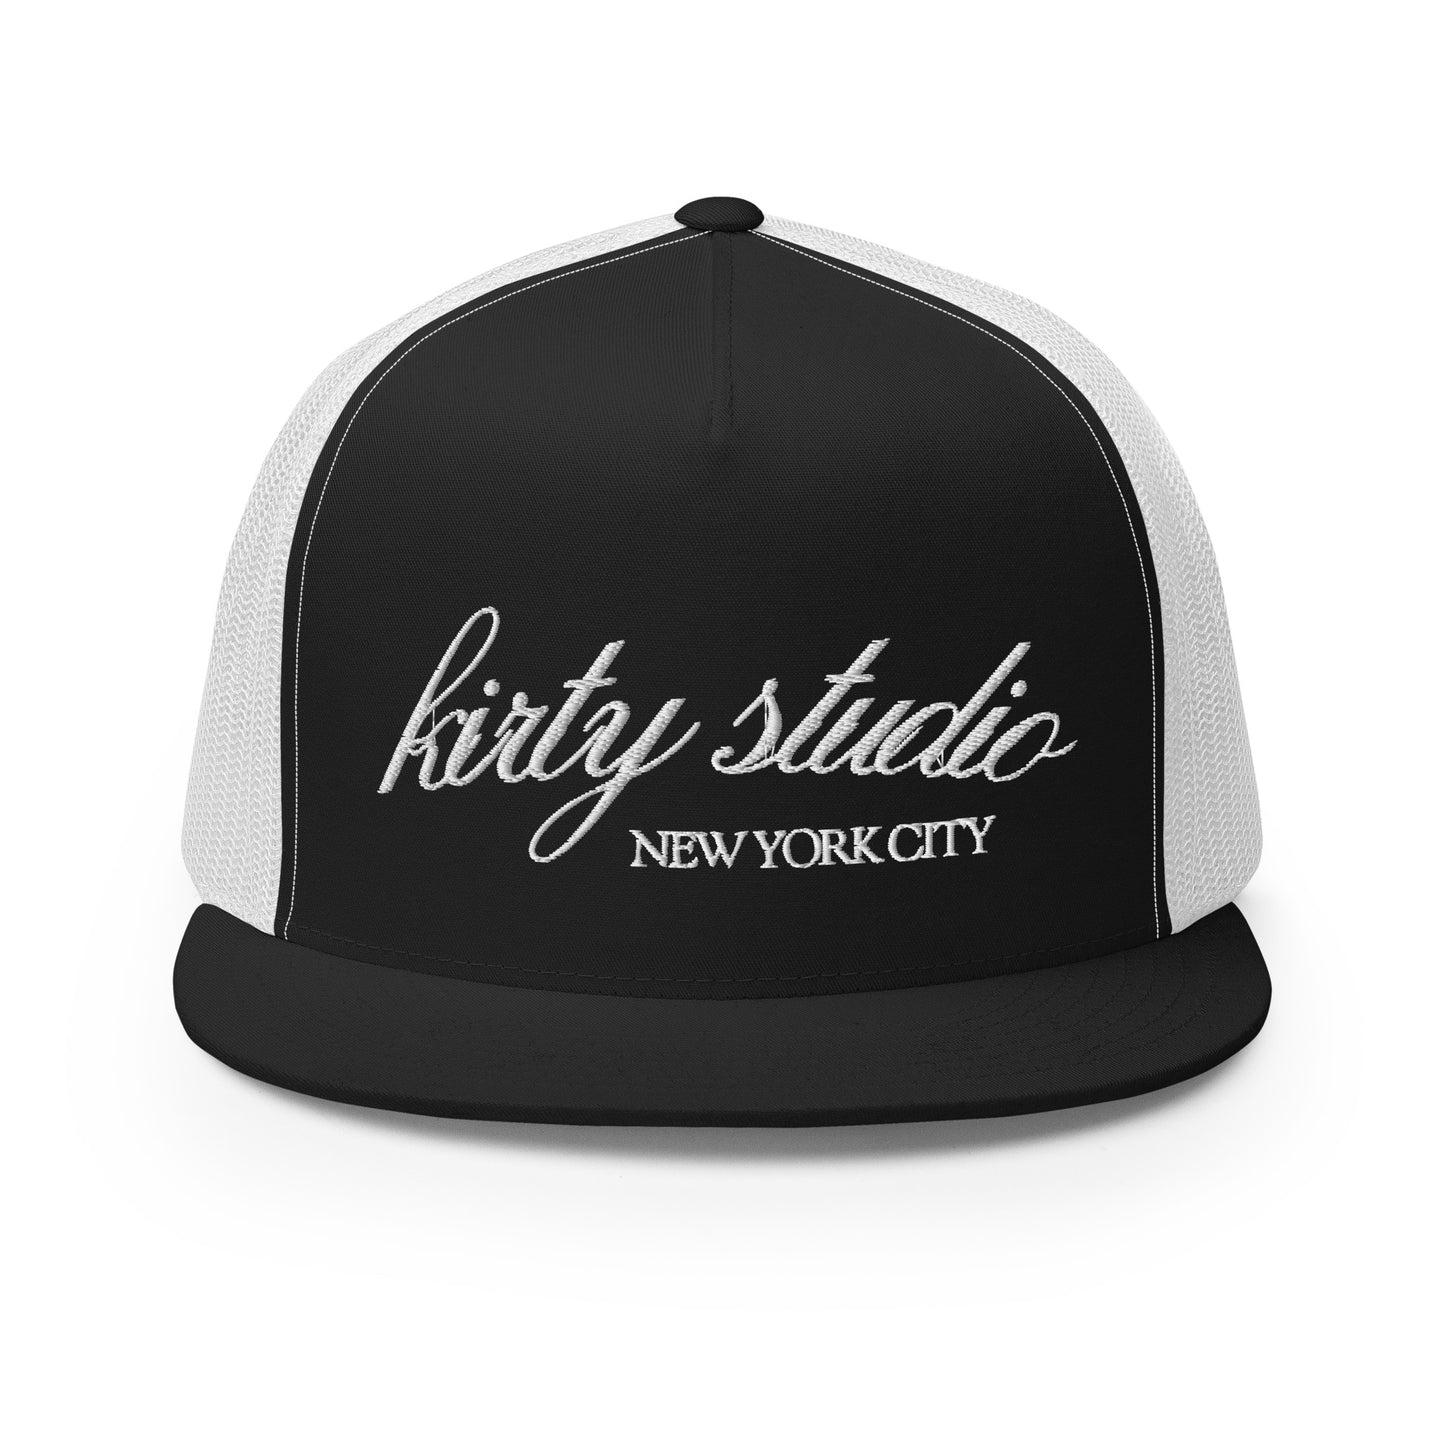 'Kirty Studio' Trucker Hat - Reverse B&W